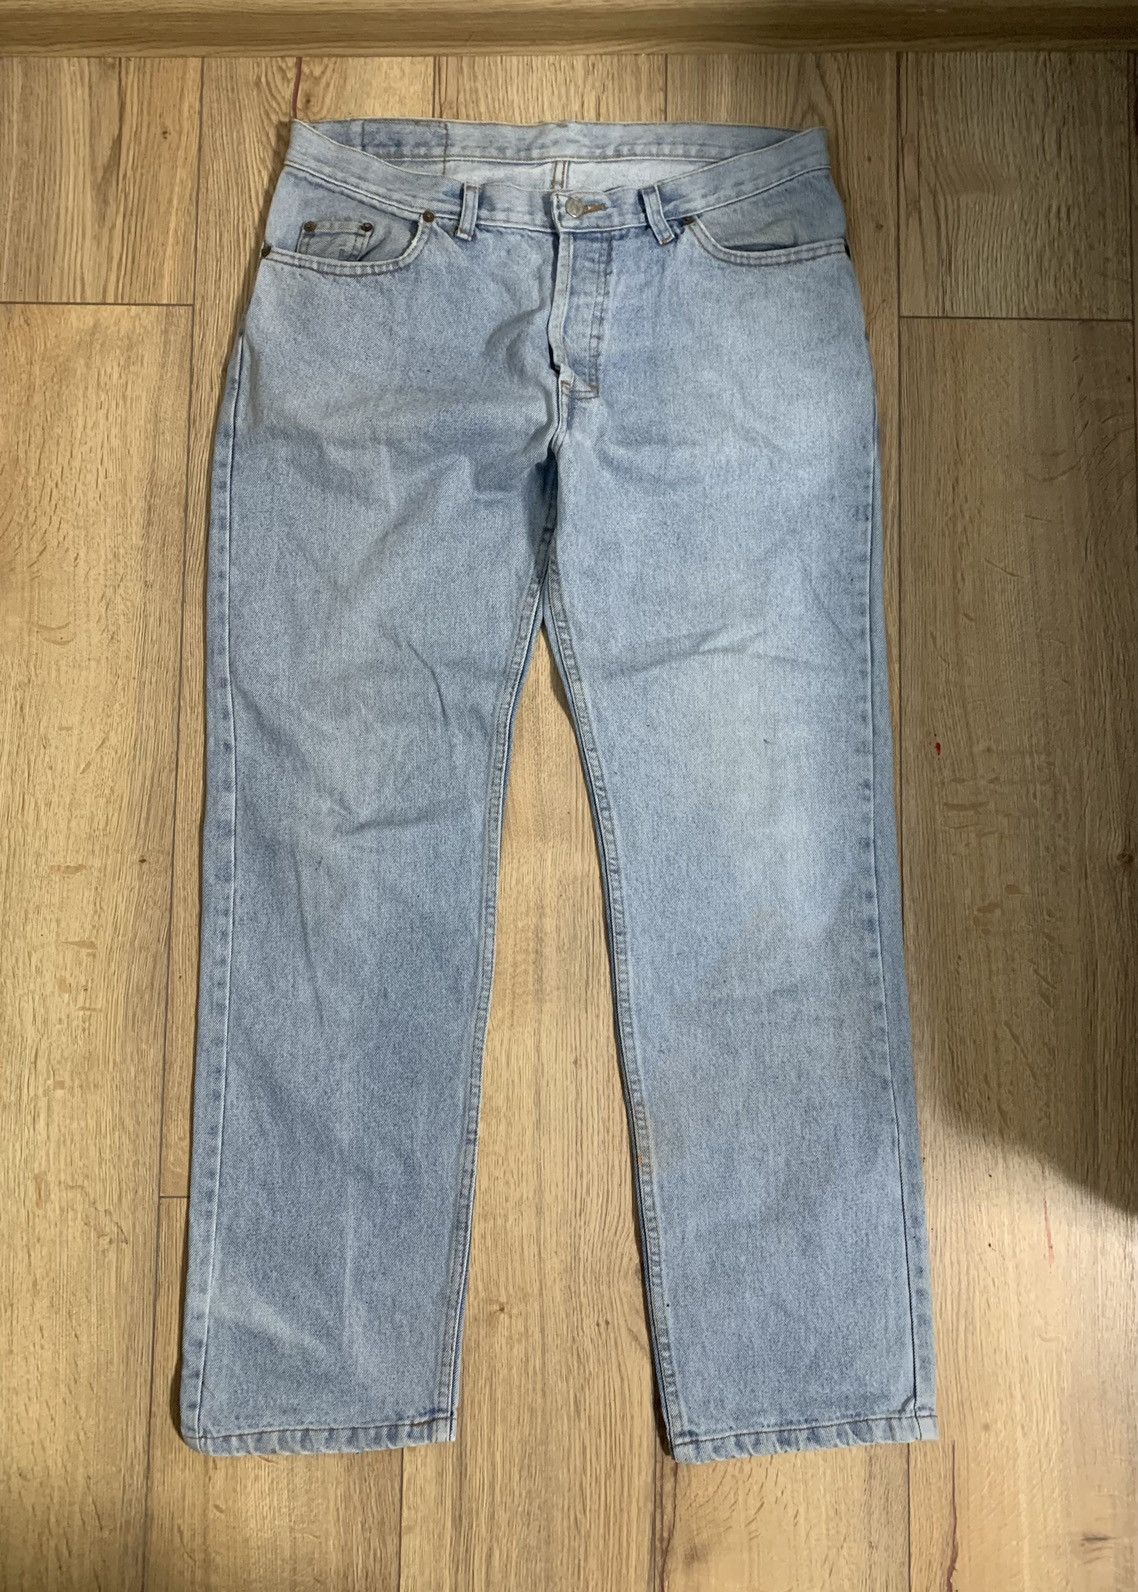 Levi's Levi’s custom paint koi fish jeans 1of1 Size US 34 / EU 50 - 4 Thumbnail